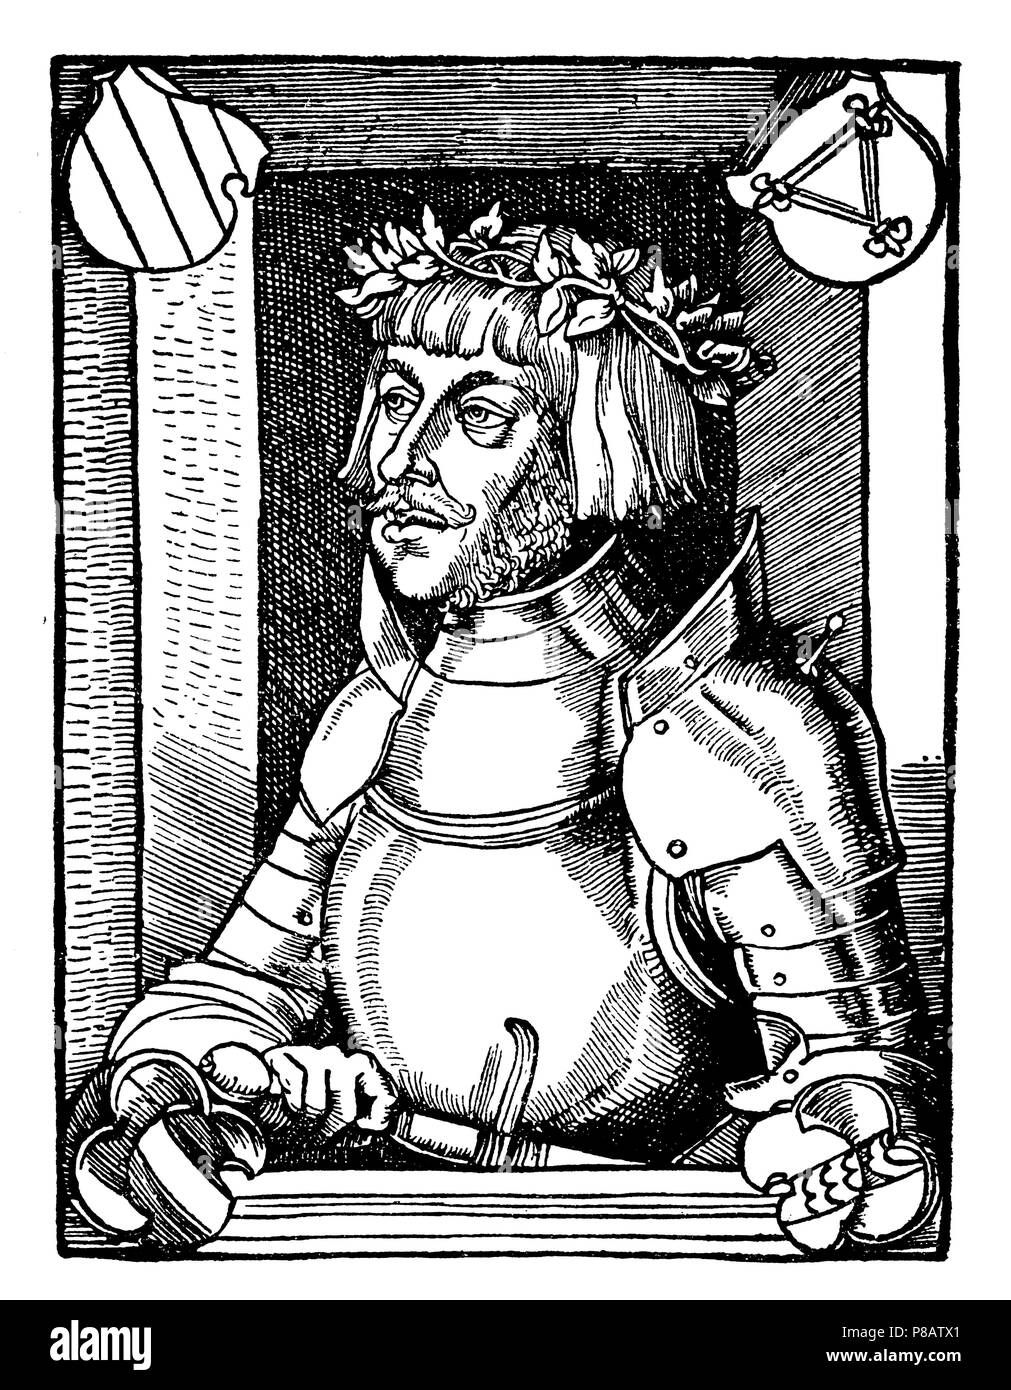 Ulrich von Hutten (1488-1523). Nach einem Holzschnitt aus dem gleichen Jahr, in dem er seinen bekannten Kampf Song erschien, 1923 Stockfoto